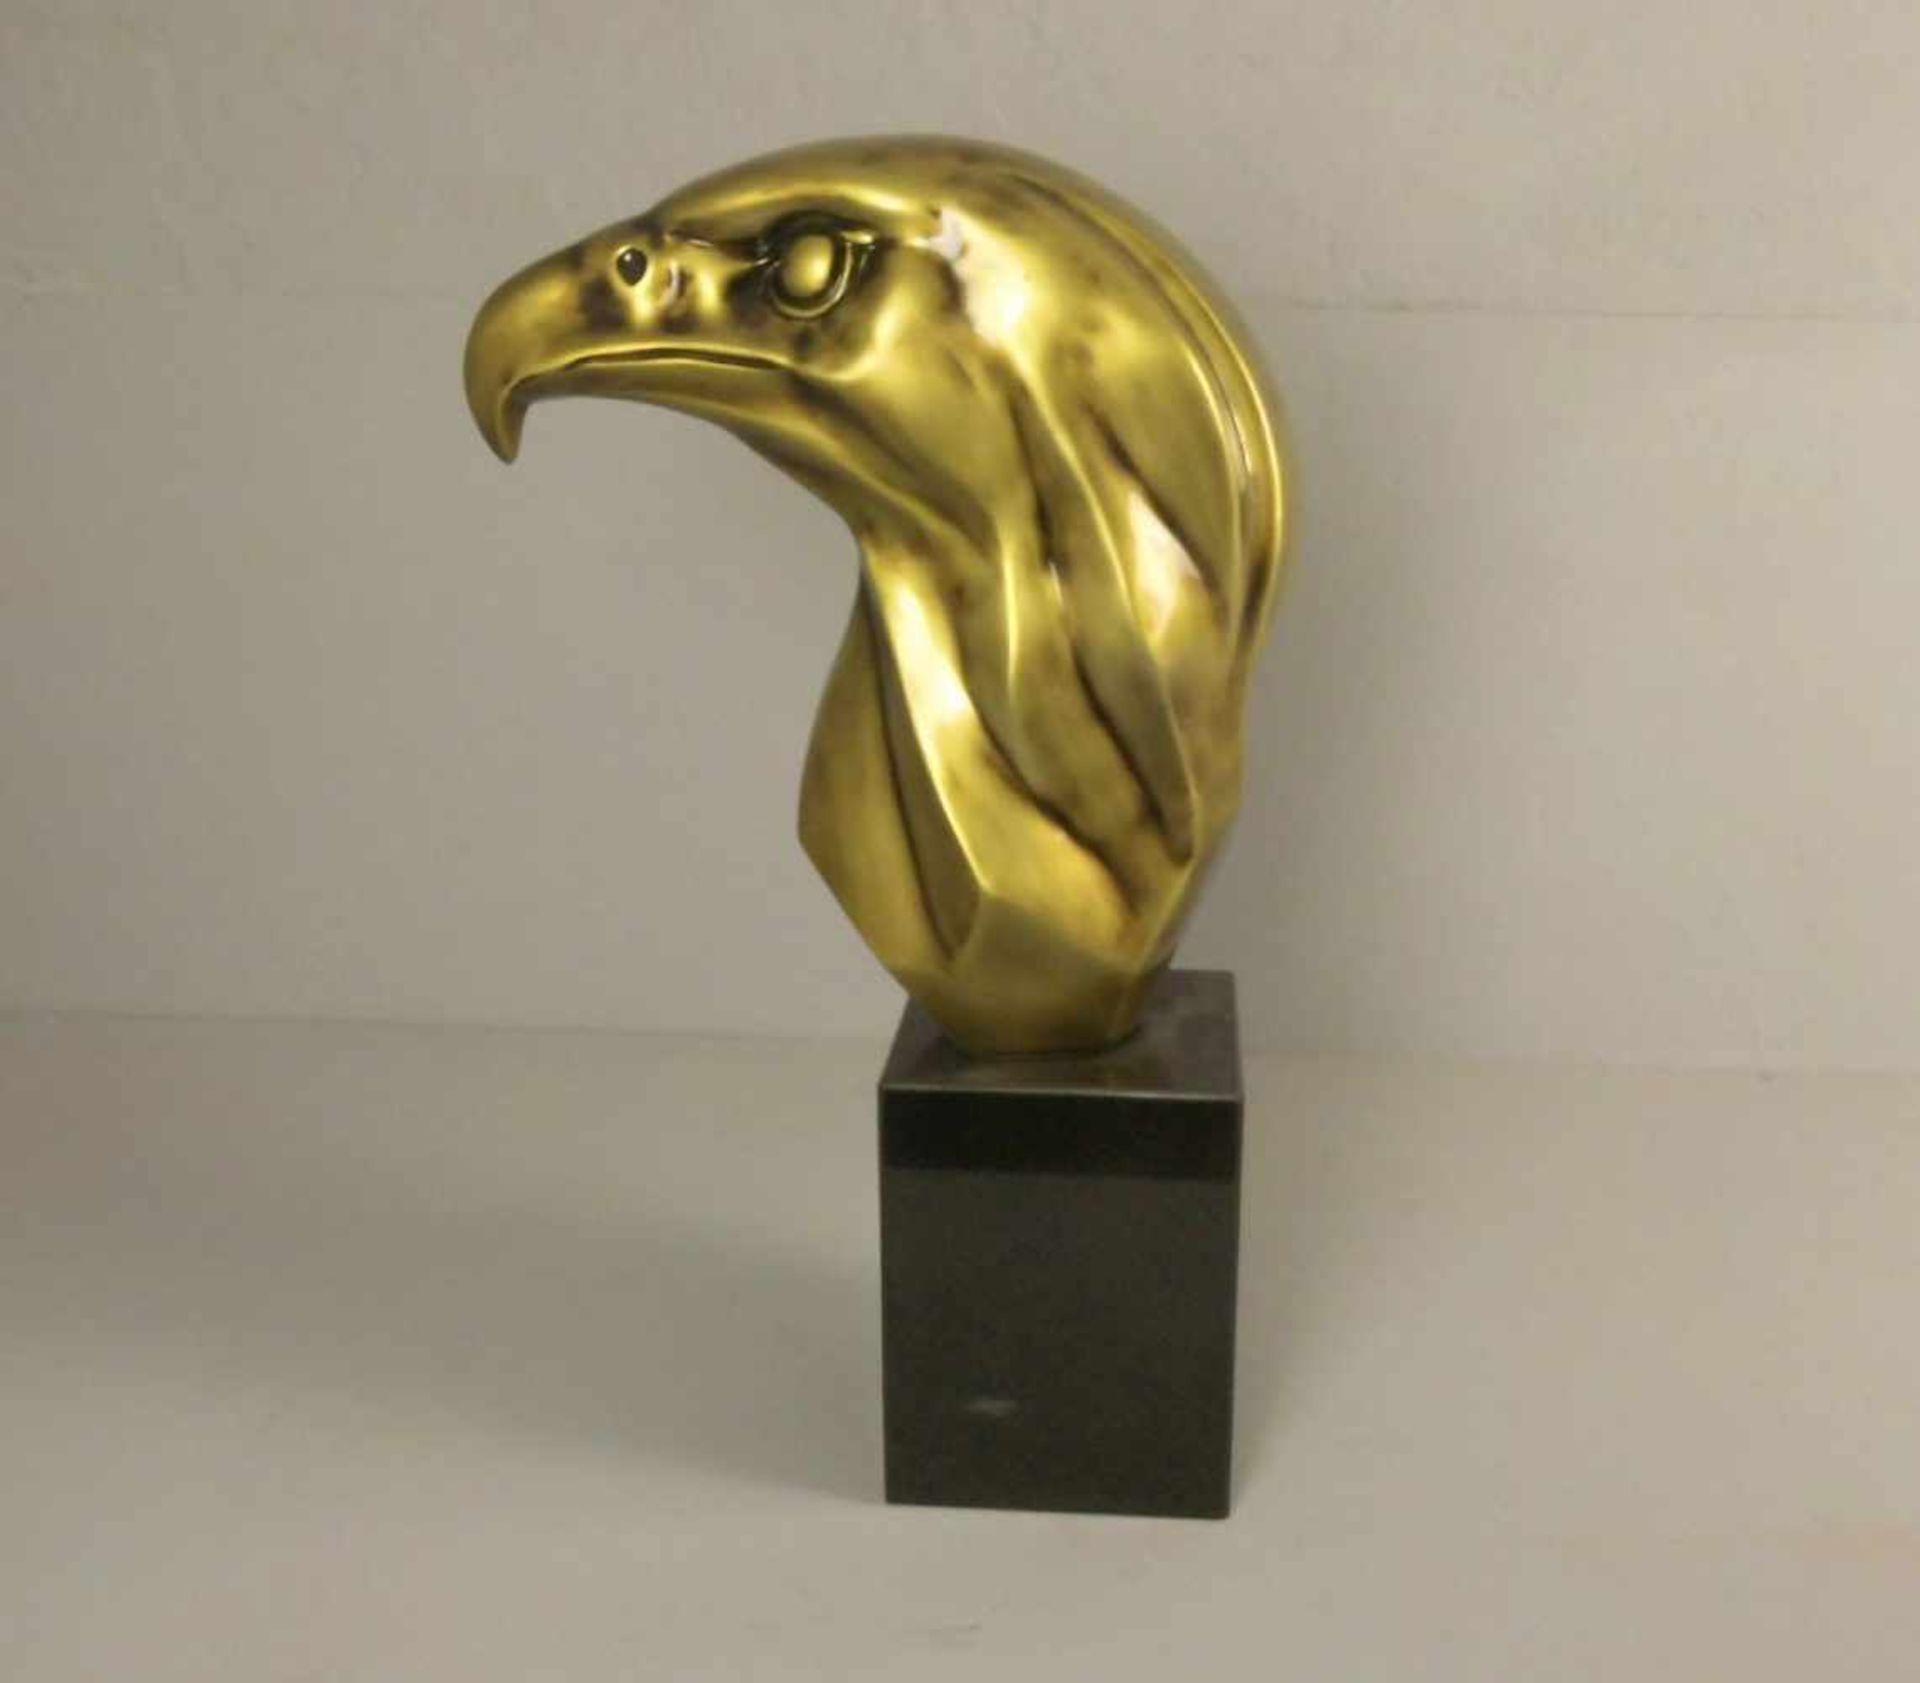 ANONYMUS (20. Jh.), Skulptur / sculpture : "Adlerkopf", goldfarben bronziertes Fieberglas auf